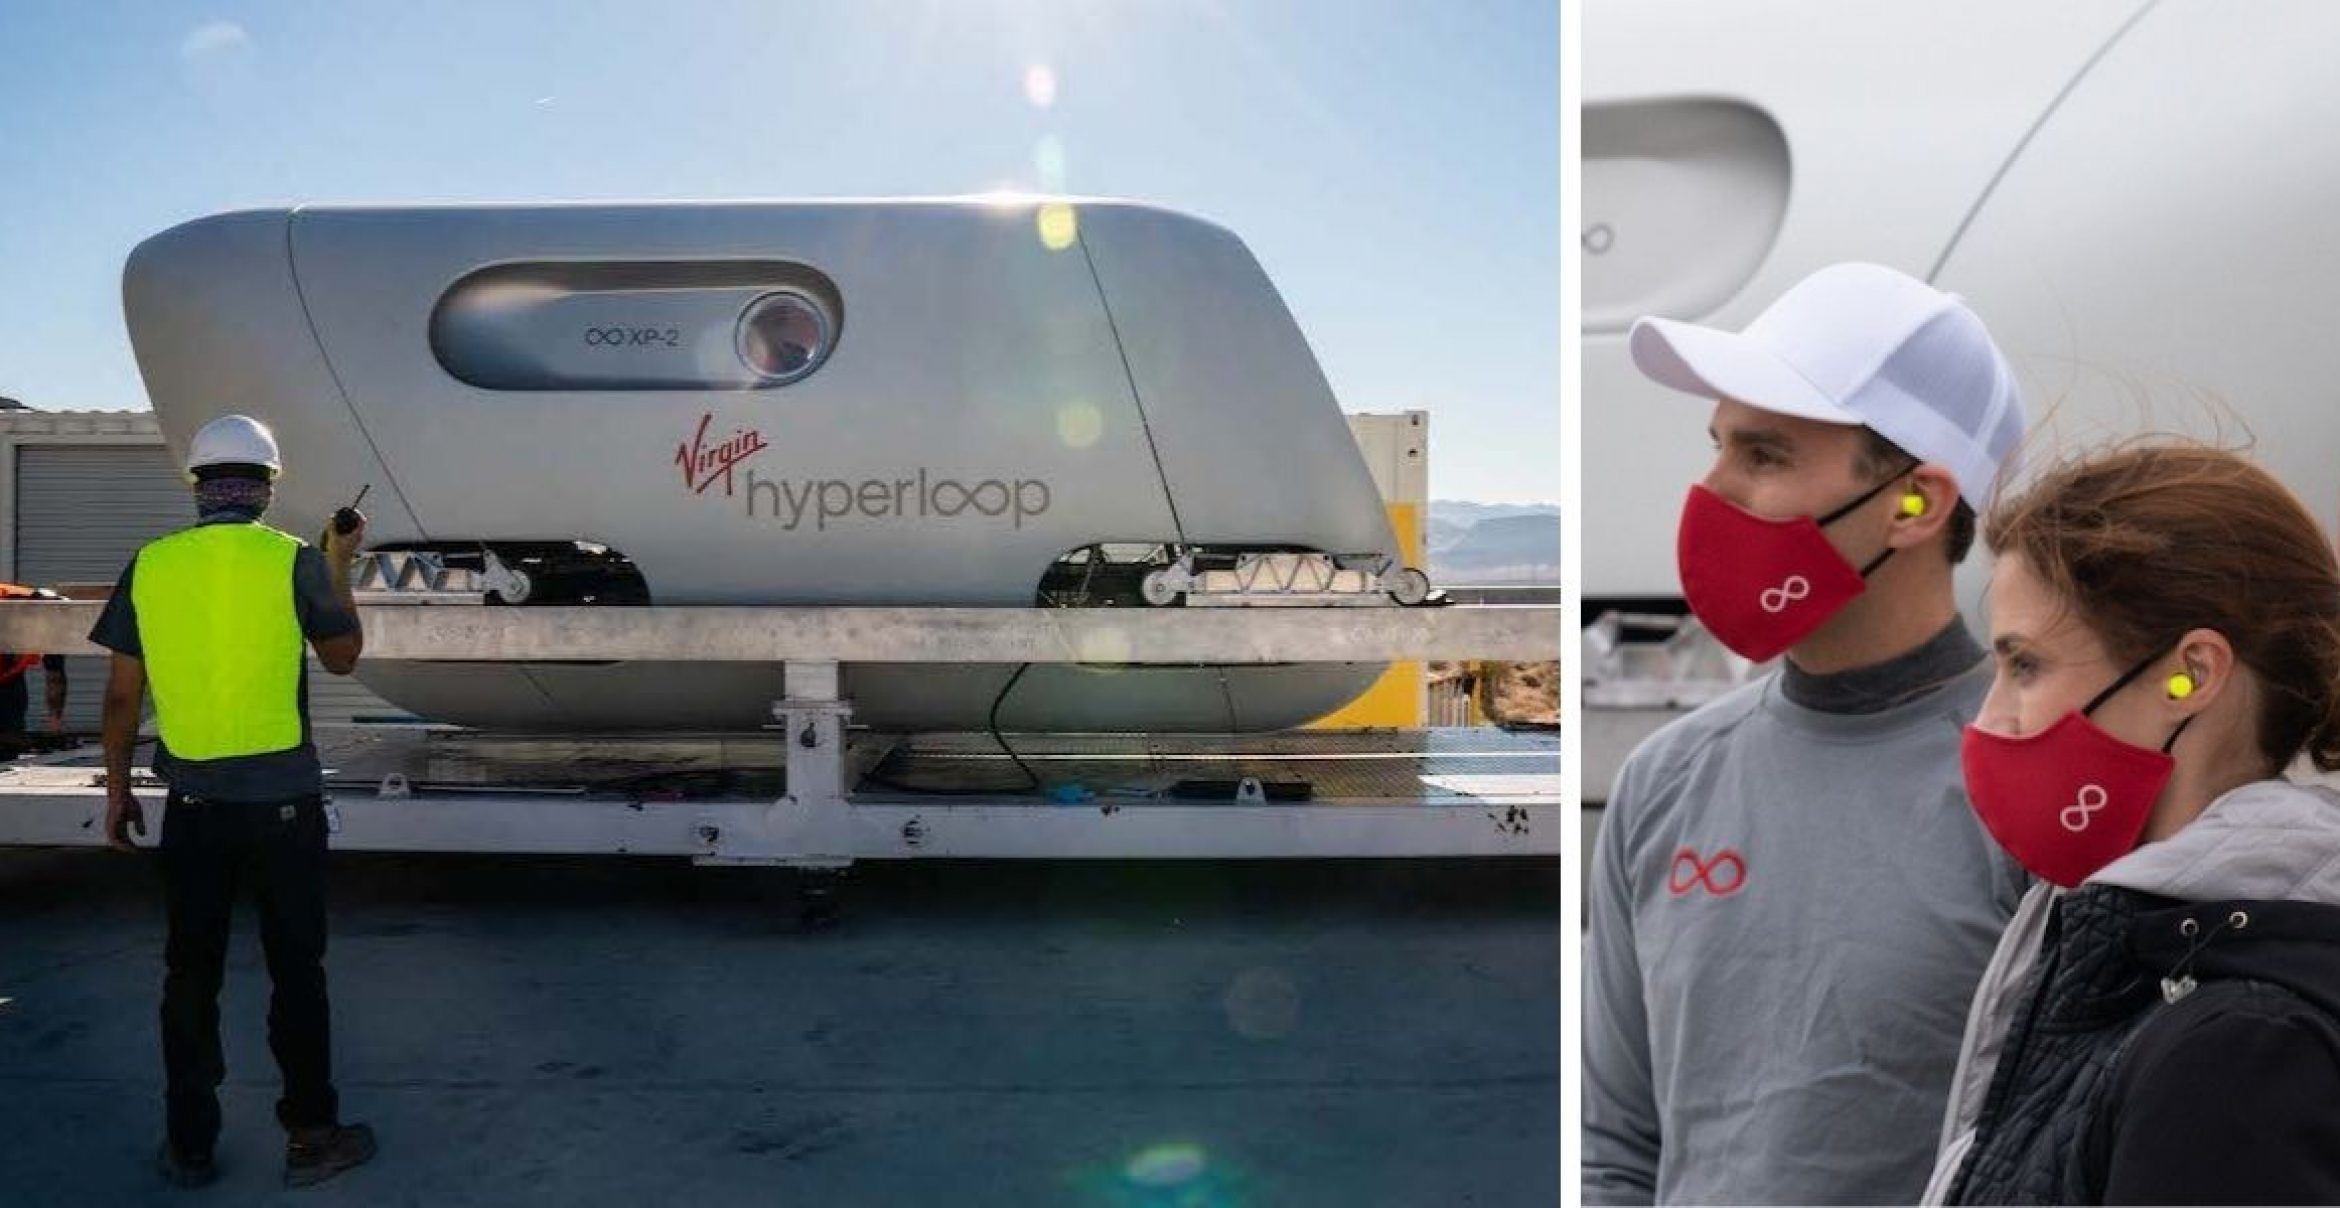 Menschen in Kapseln durch Röhren schießen: Hyperloop besteht erste bemannte Testfahrt